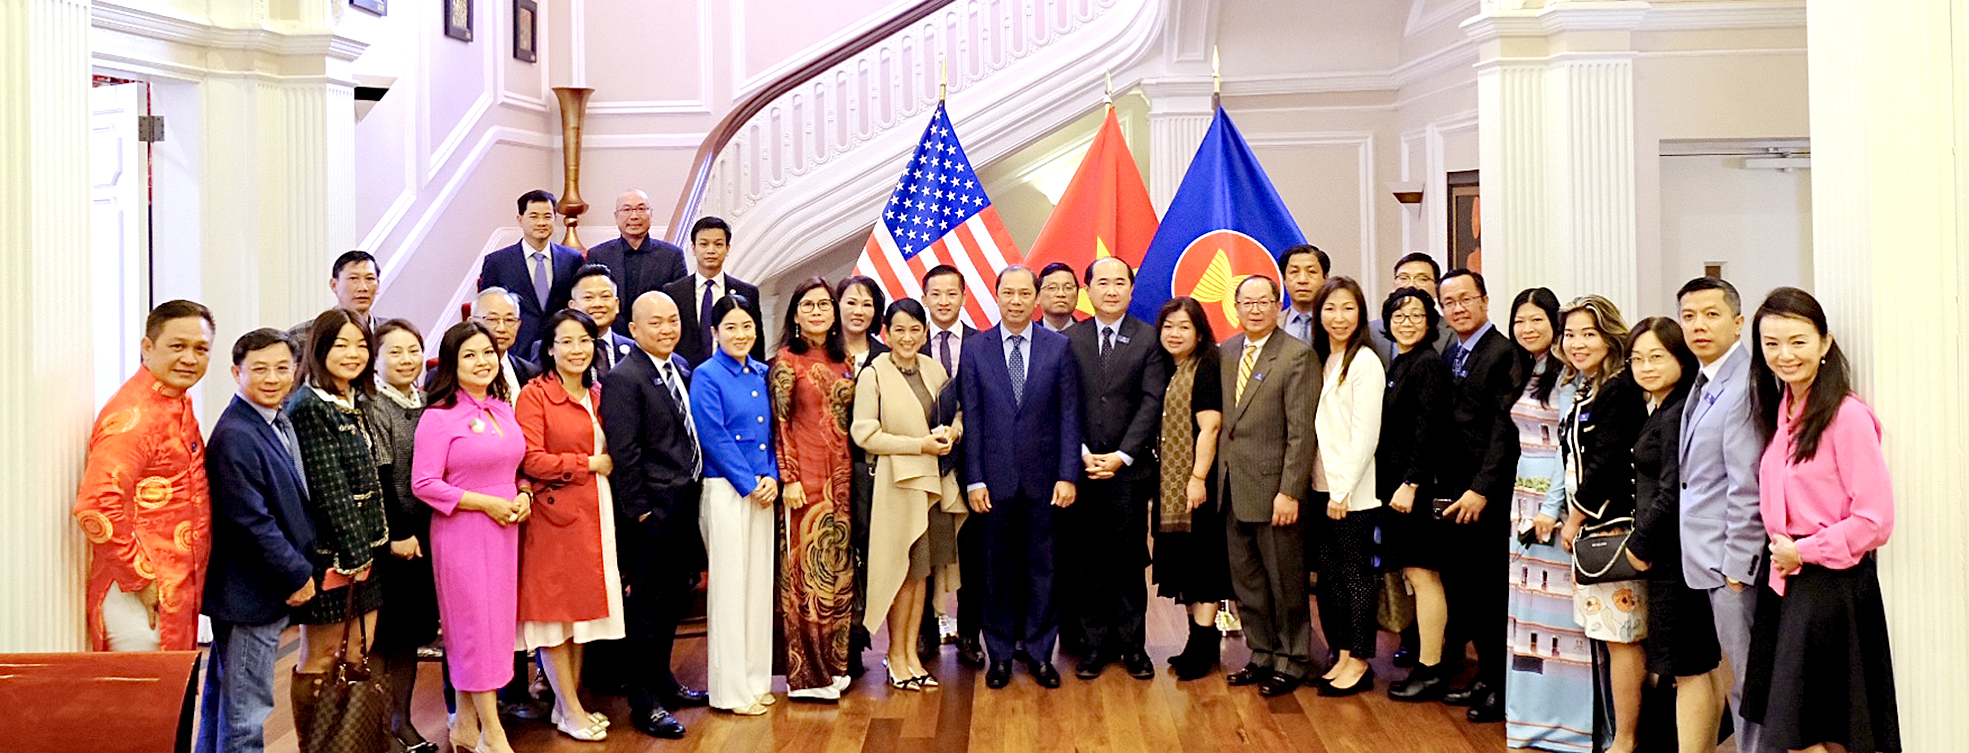 Đại sứ Việt Nam tại Mỹ Nguyễn Quốc Dũng: Tranh thủ tối đa ngoại lực để phát triển đất nước - Ảnh 13.